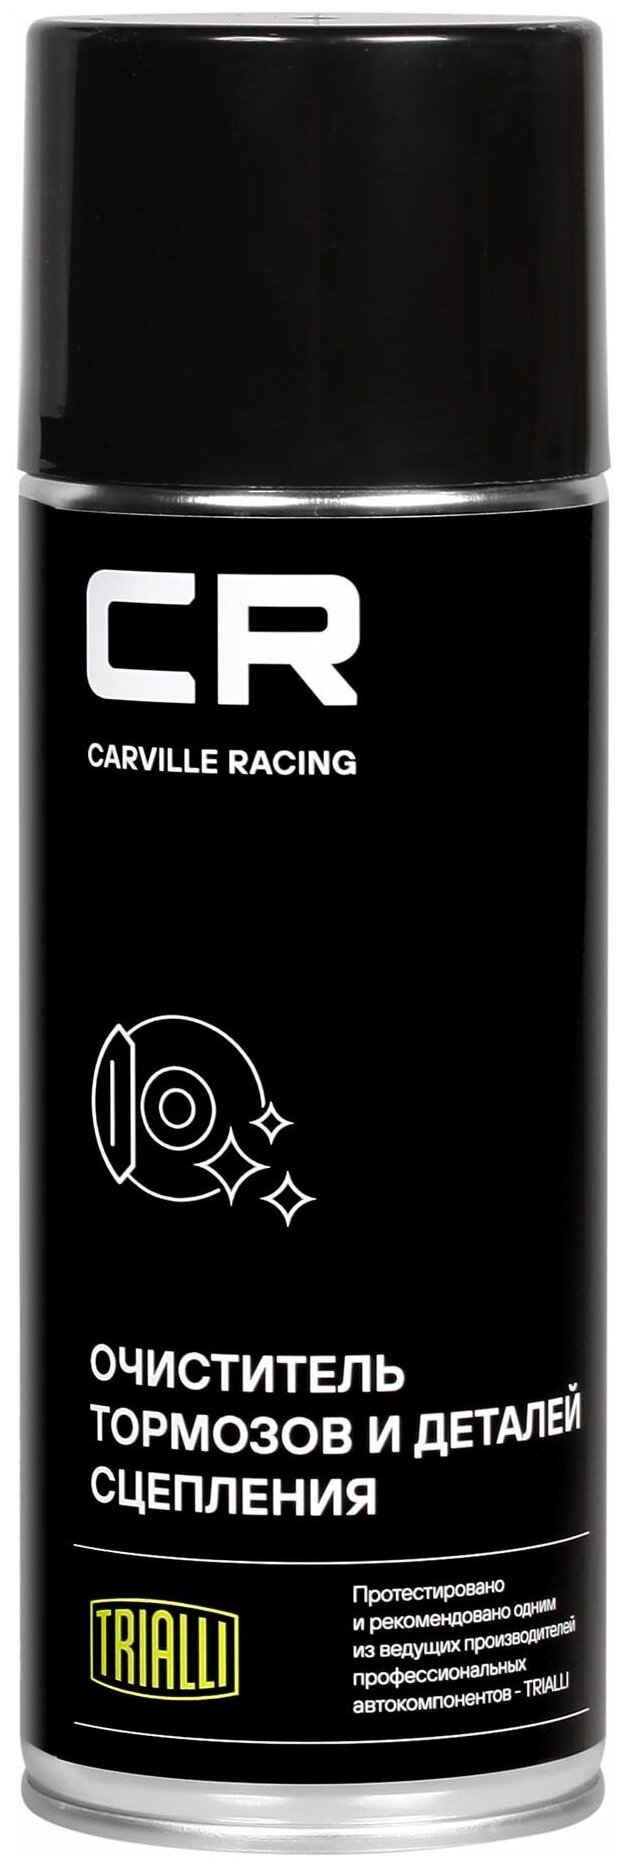 Очиститель CARVILLE RACING тормозов и деталей сцепления, аэрозоль; 0,52L